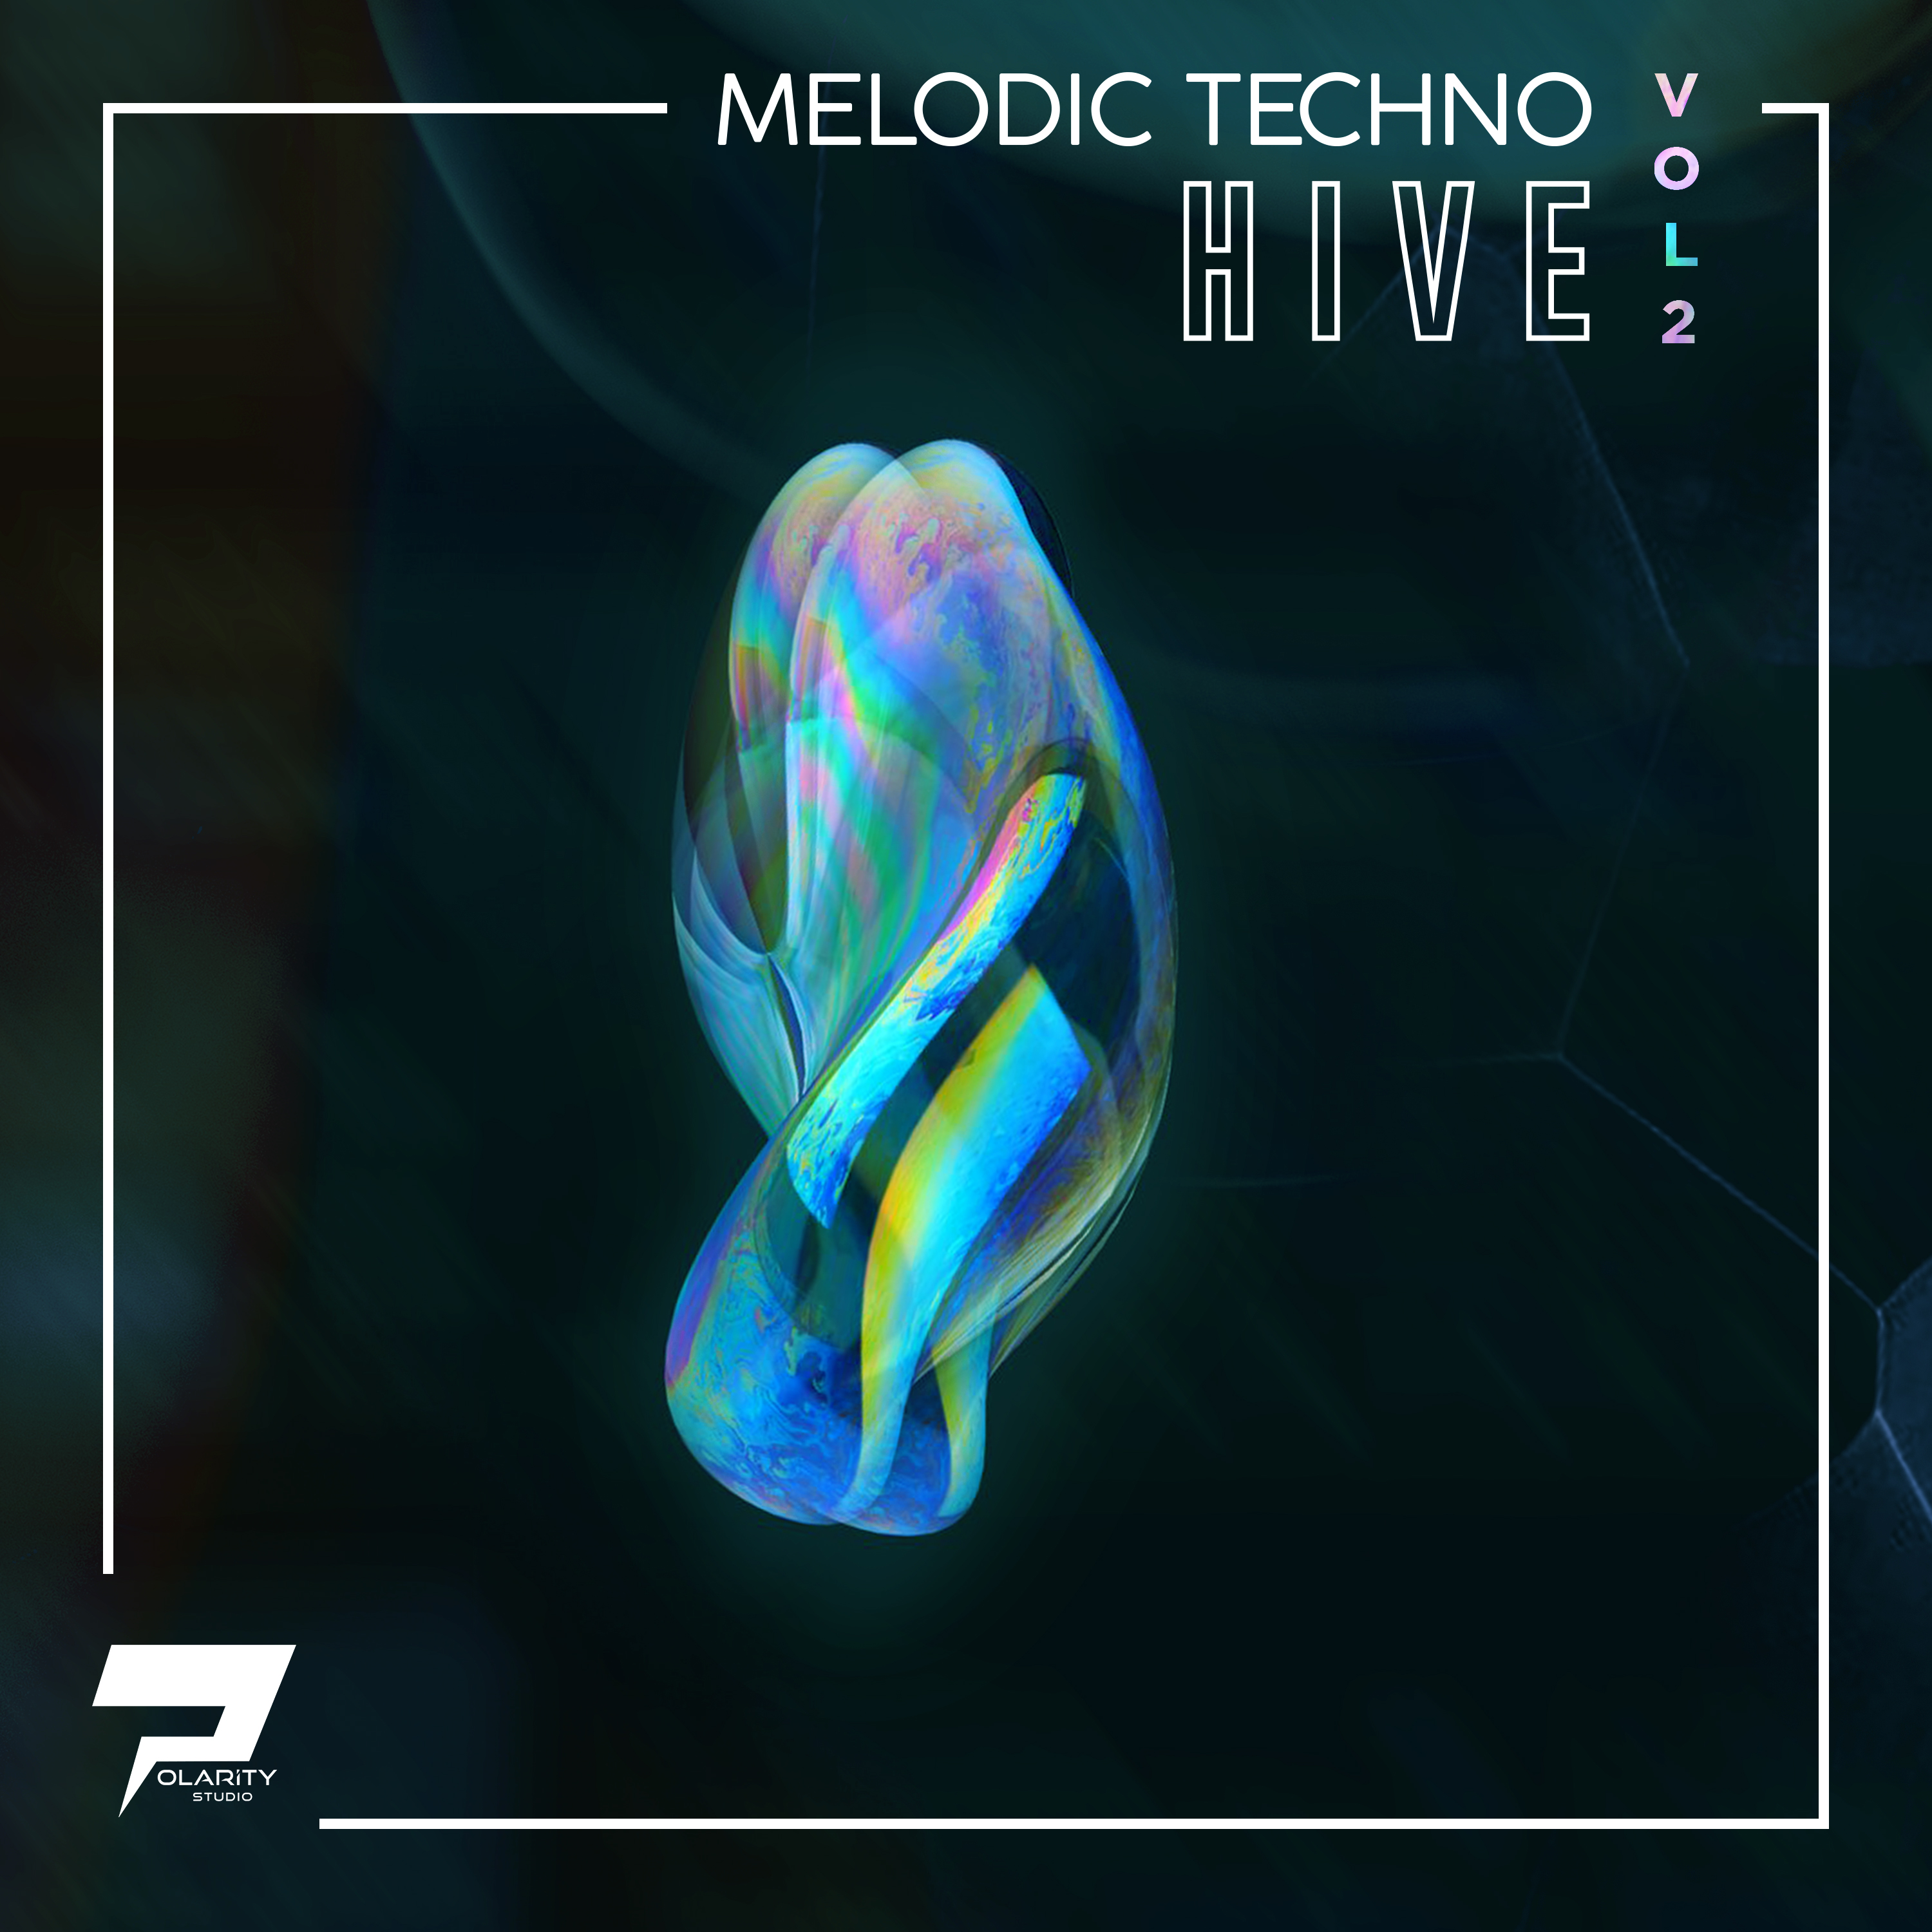 Polarity Studio - Melodic Techno - Hive 2 Vol. 2